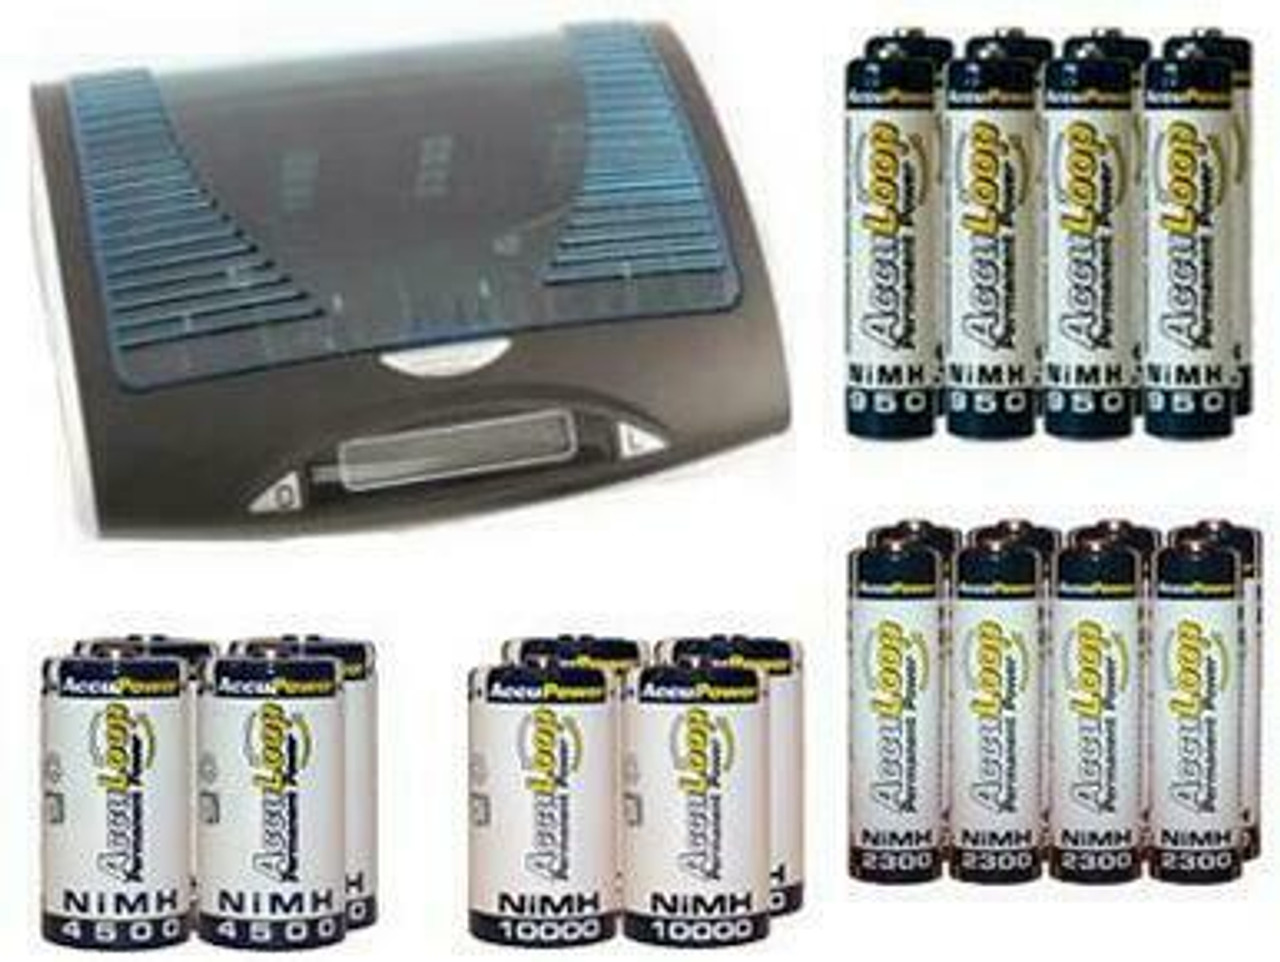 2 batteries rechargeables D POWEREX PRECHARGED 10000mAh, NiMH